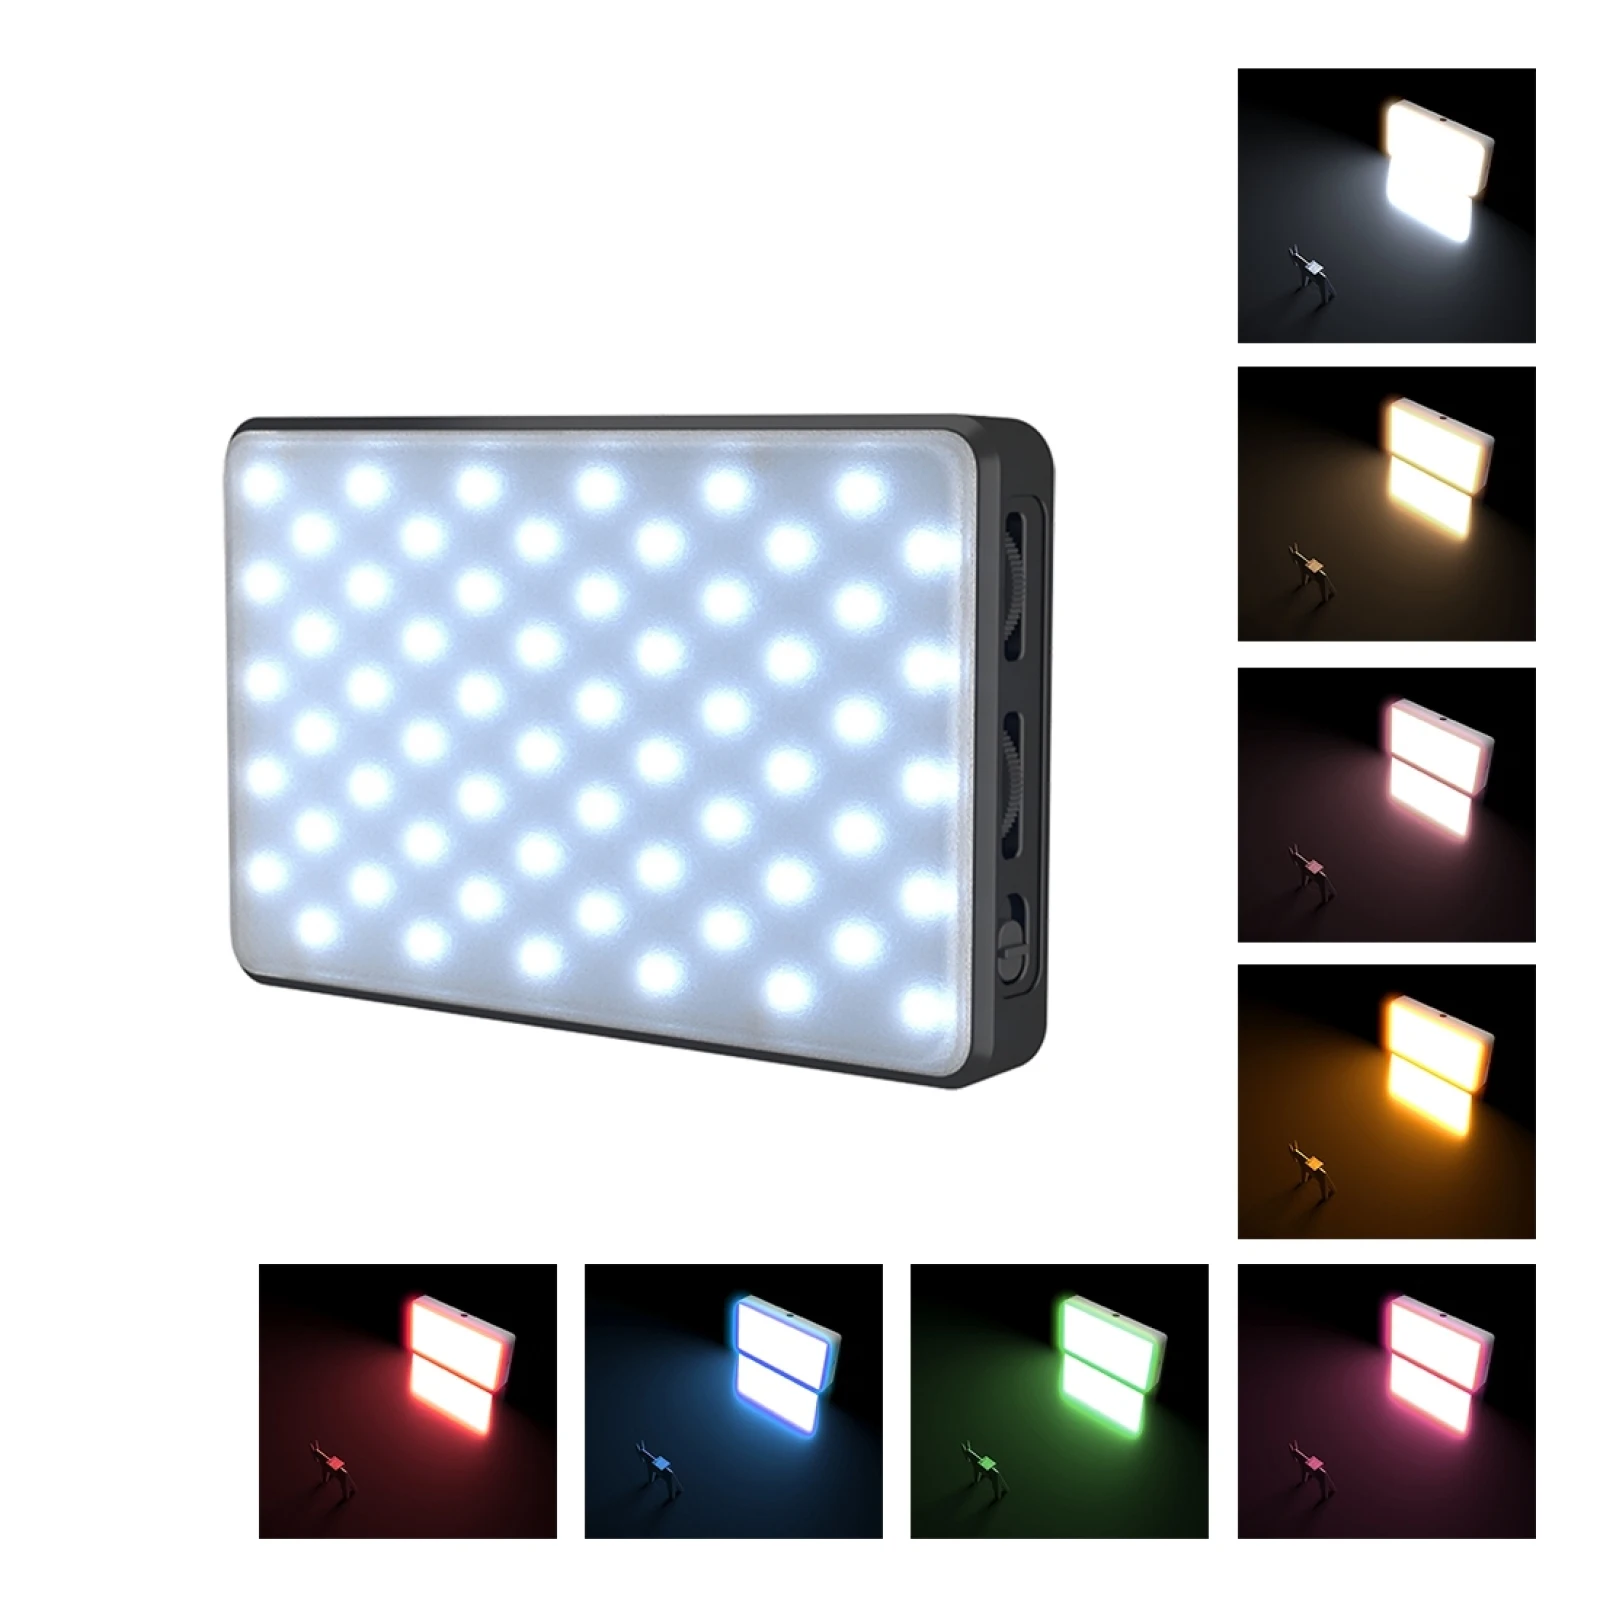 

Светодиодсветильник лампа PULUZ 9000K/2500K 120 LED s для прямой трансляции видео, фотосъемки, красоты, Селфи, заполнясветильник с переключаемым фильт...